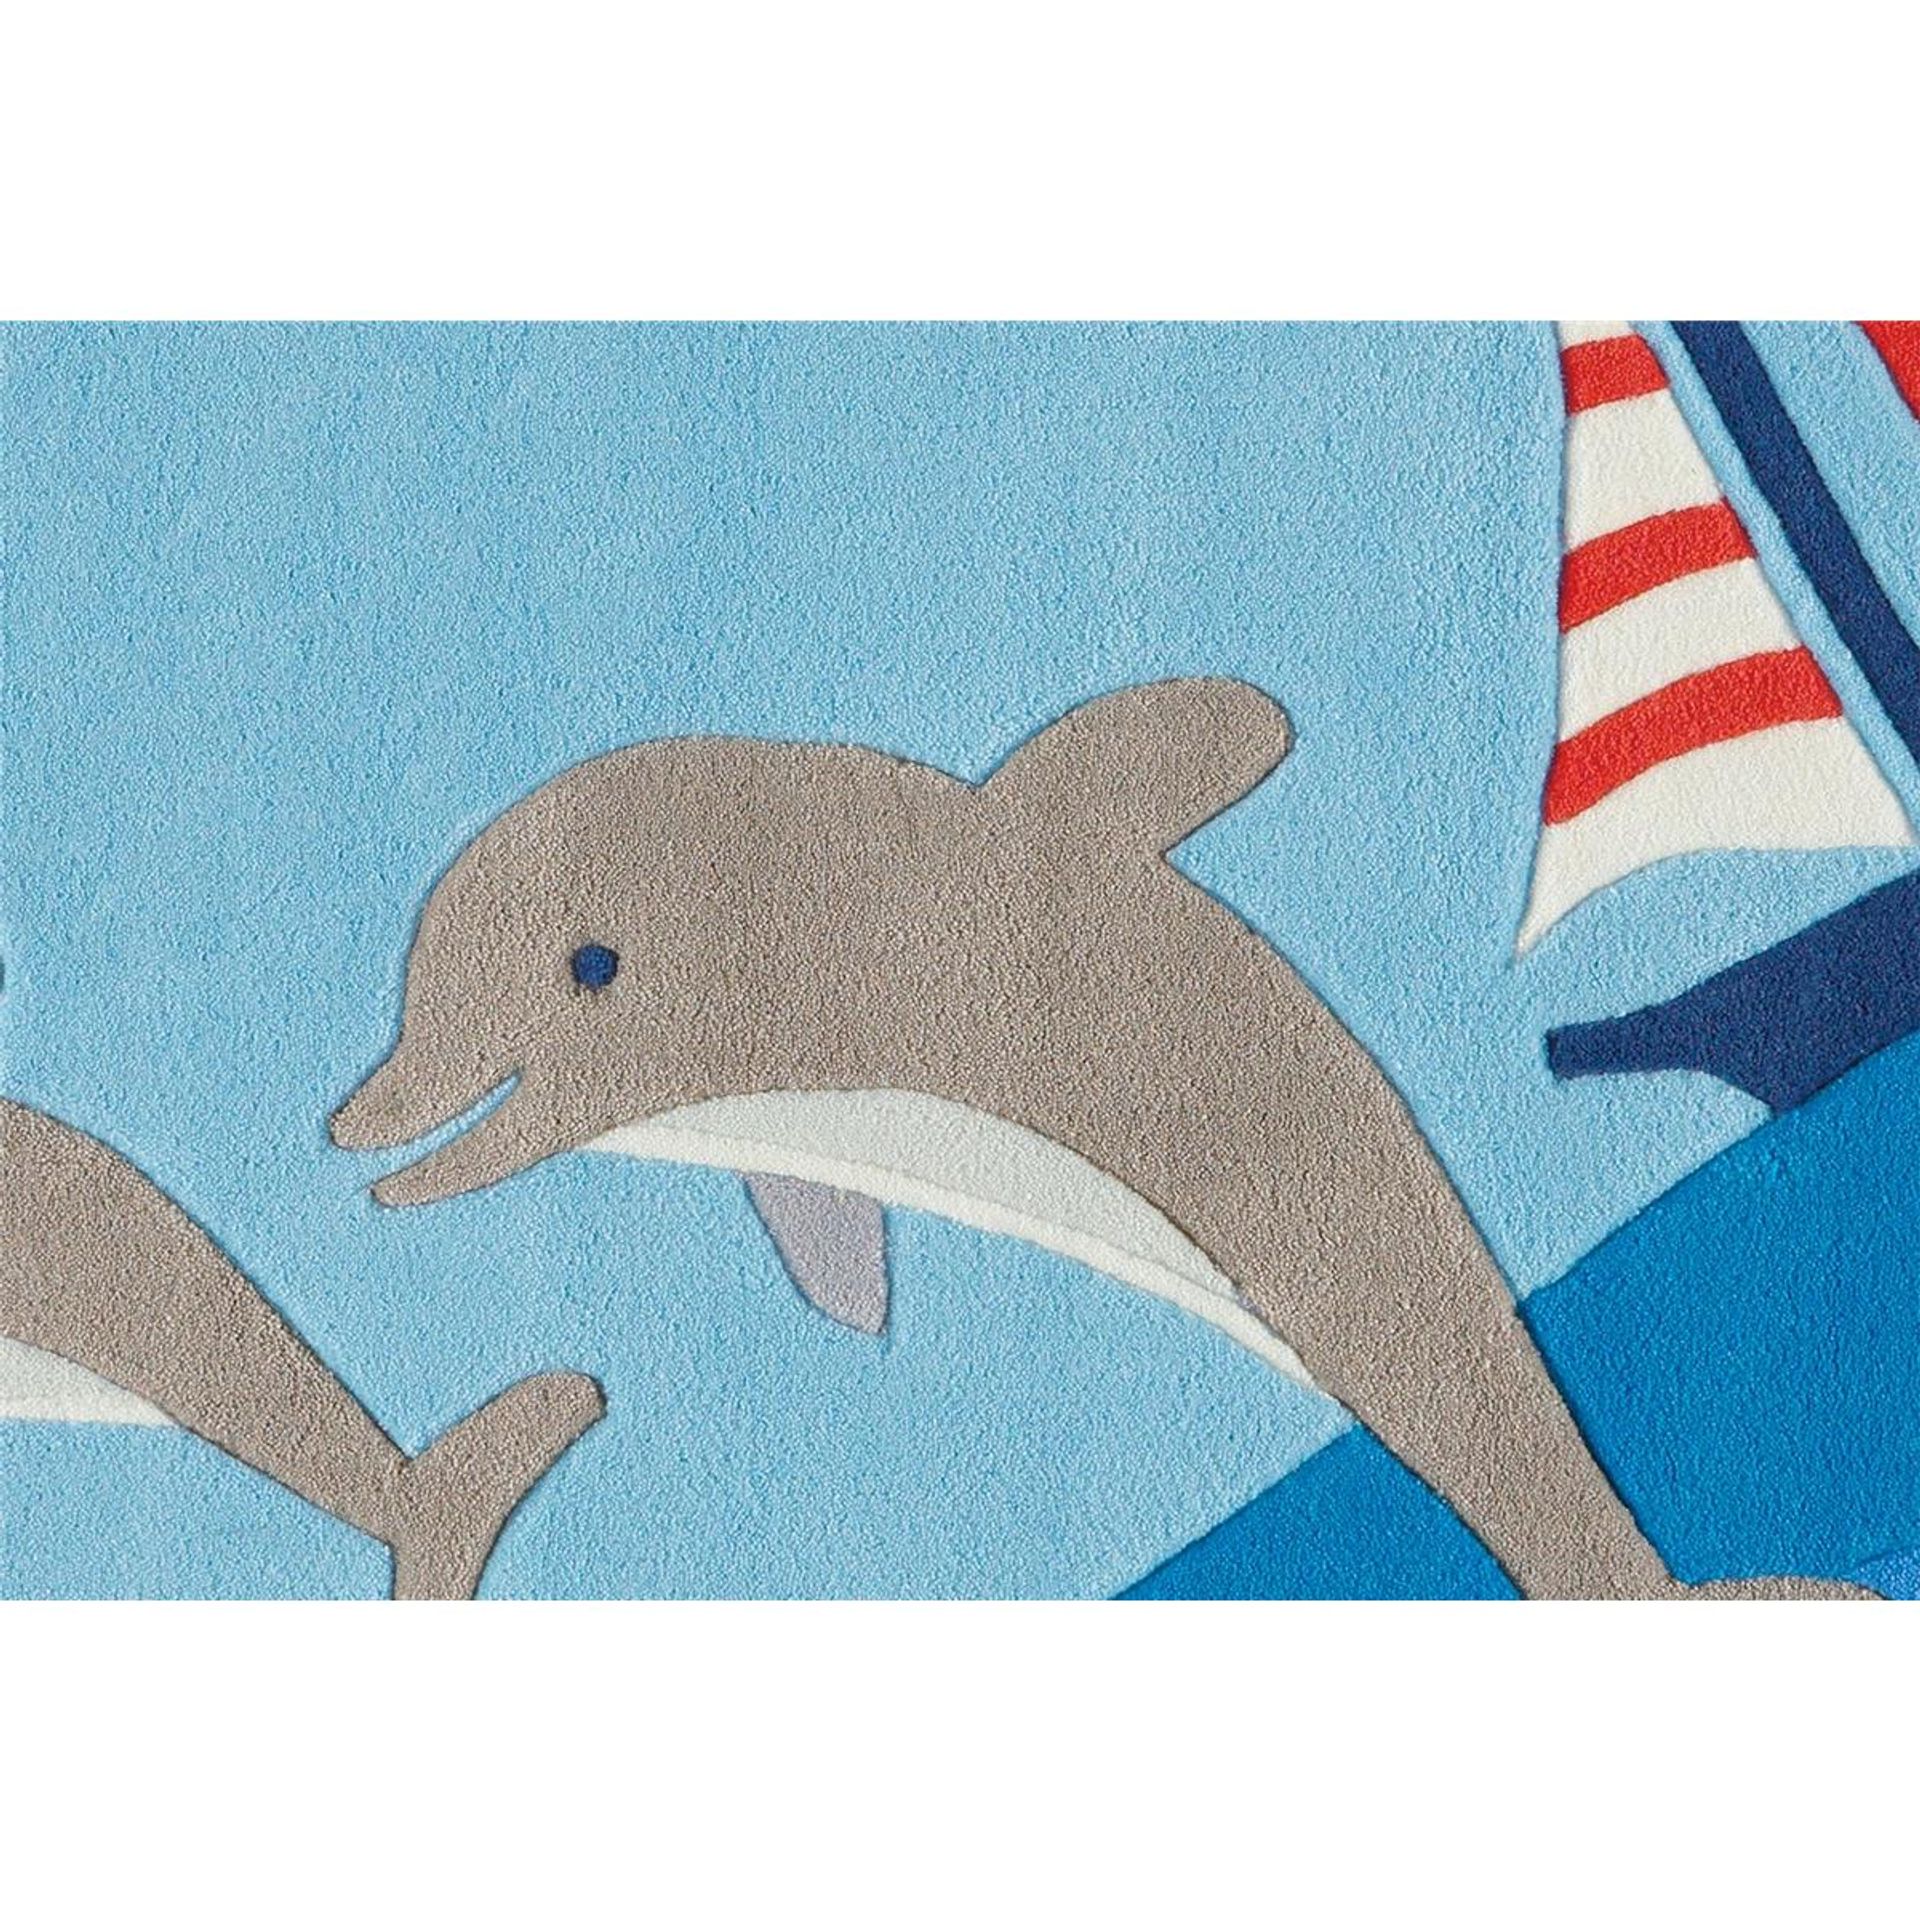 Teppich Spirit 3097 Blau Dolphins 130 cm x 130 cm ECKIG